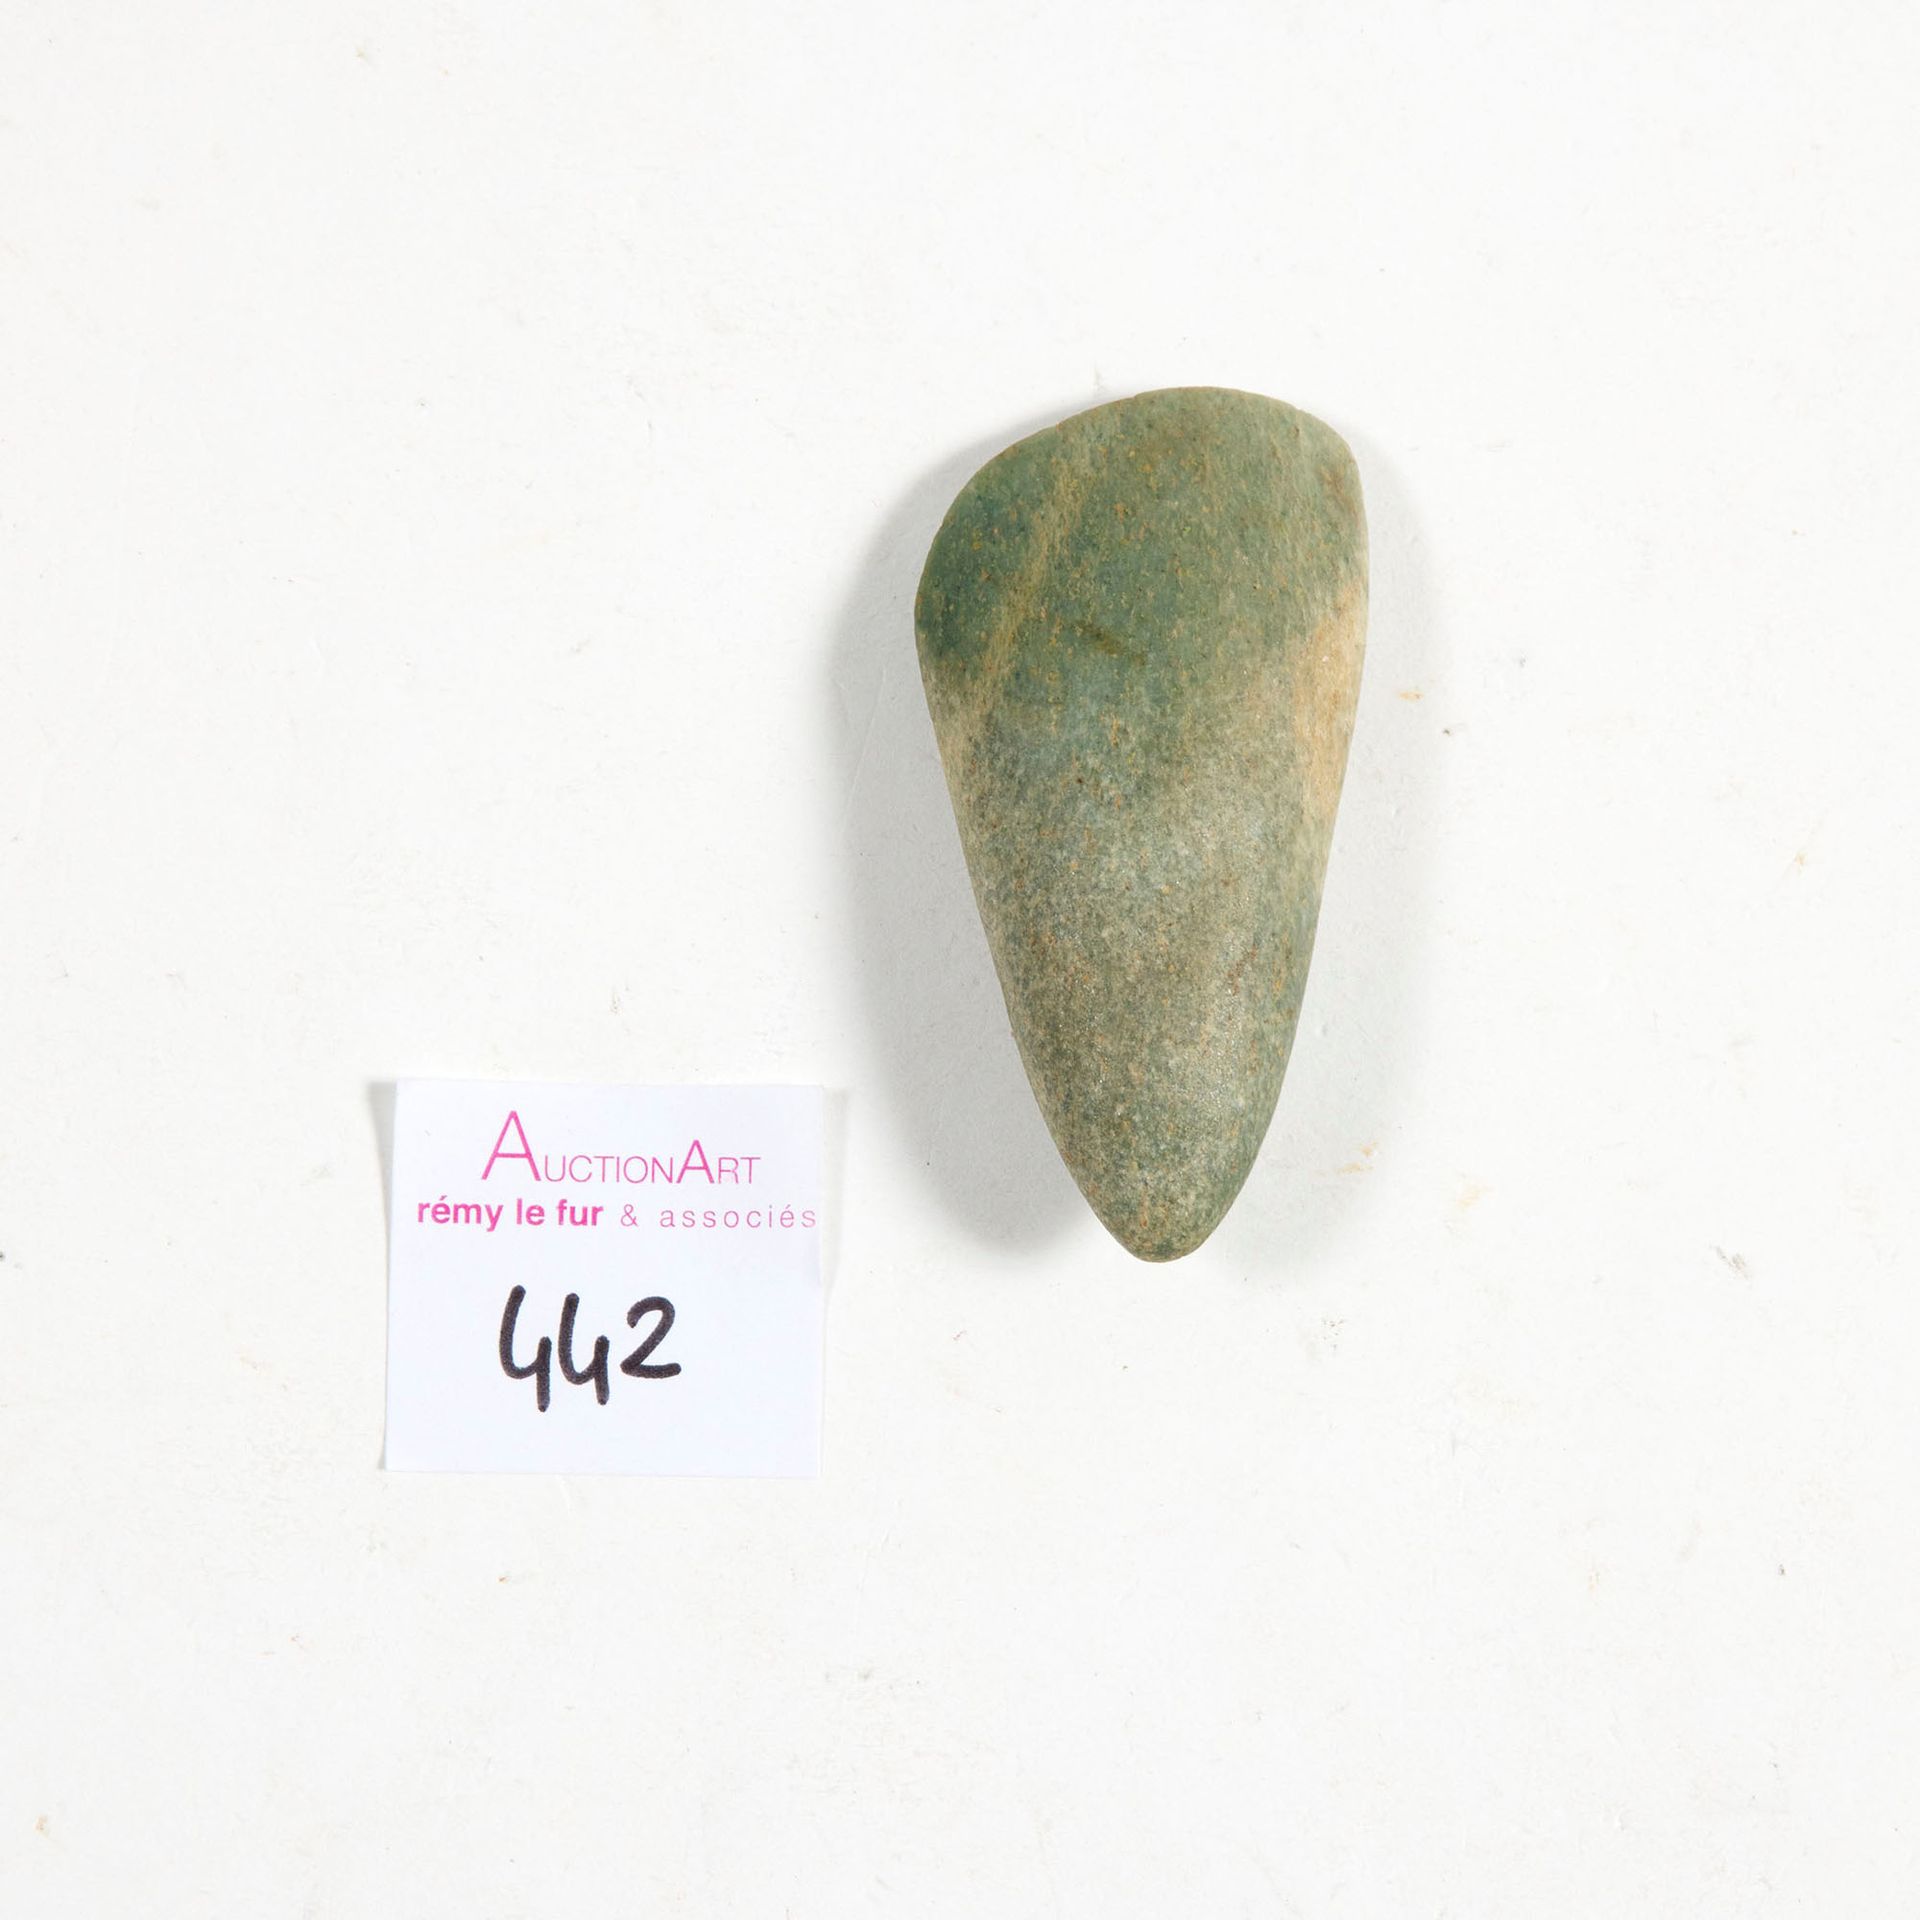 HACHE 斧头

抛光，脚跟有坑。

绿色的石头。可能是重新切割

法国或瑞士，新石器时代

L. : 6 cm